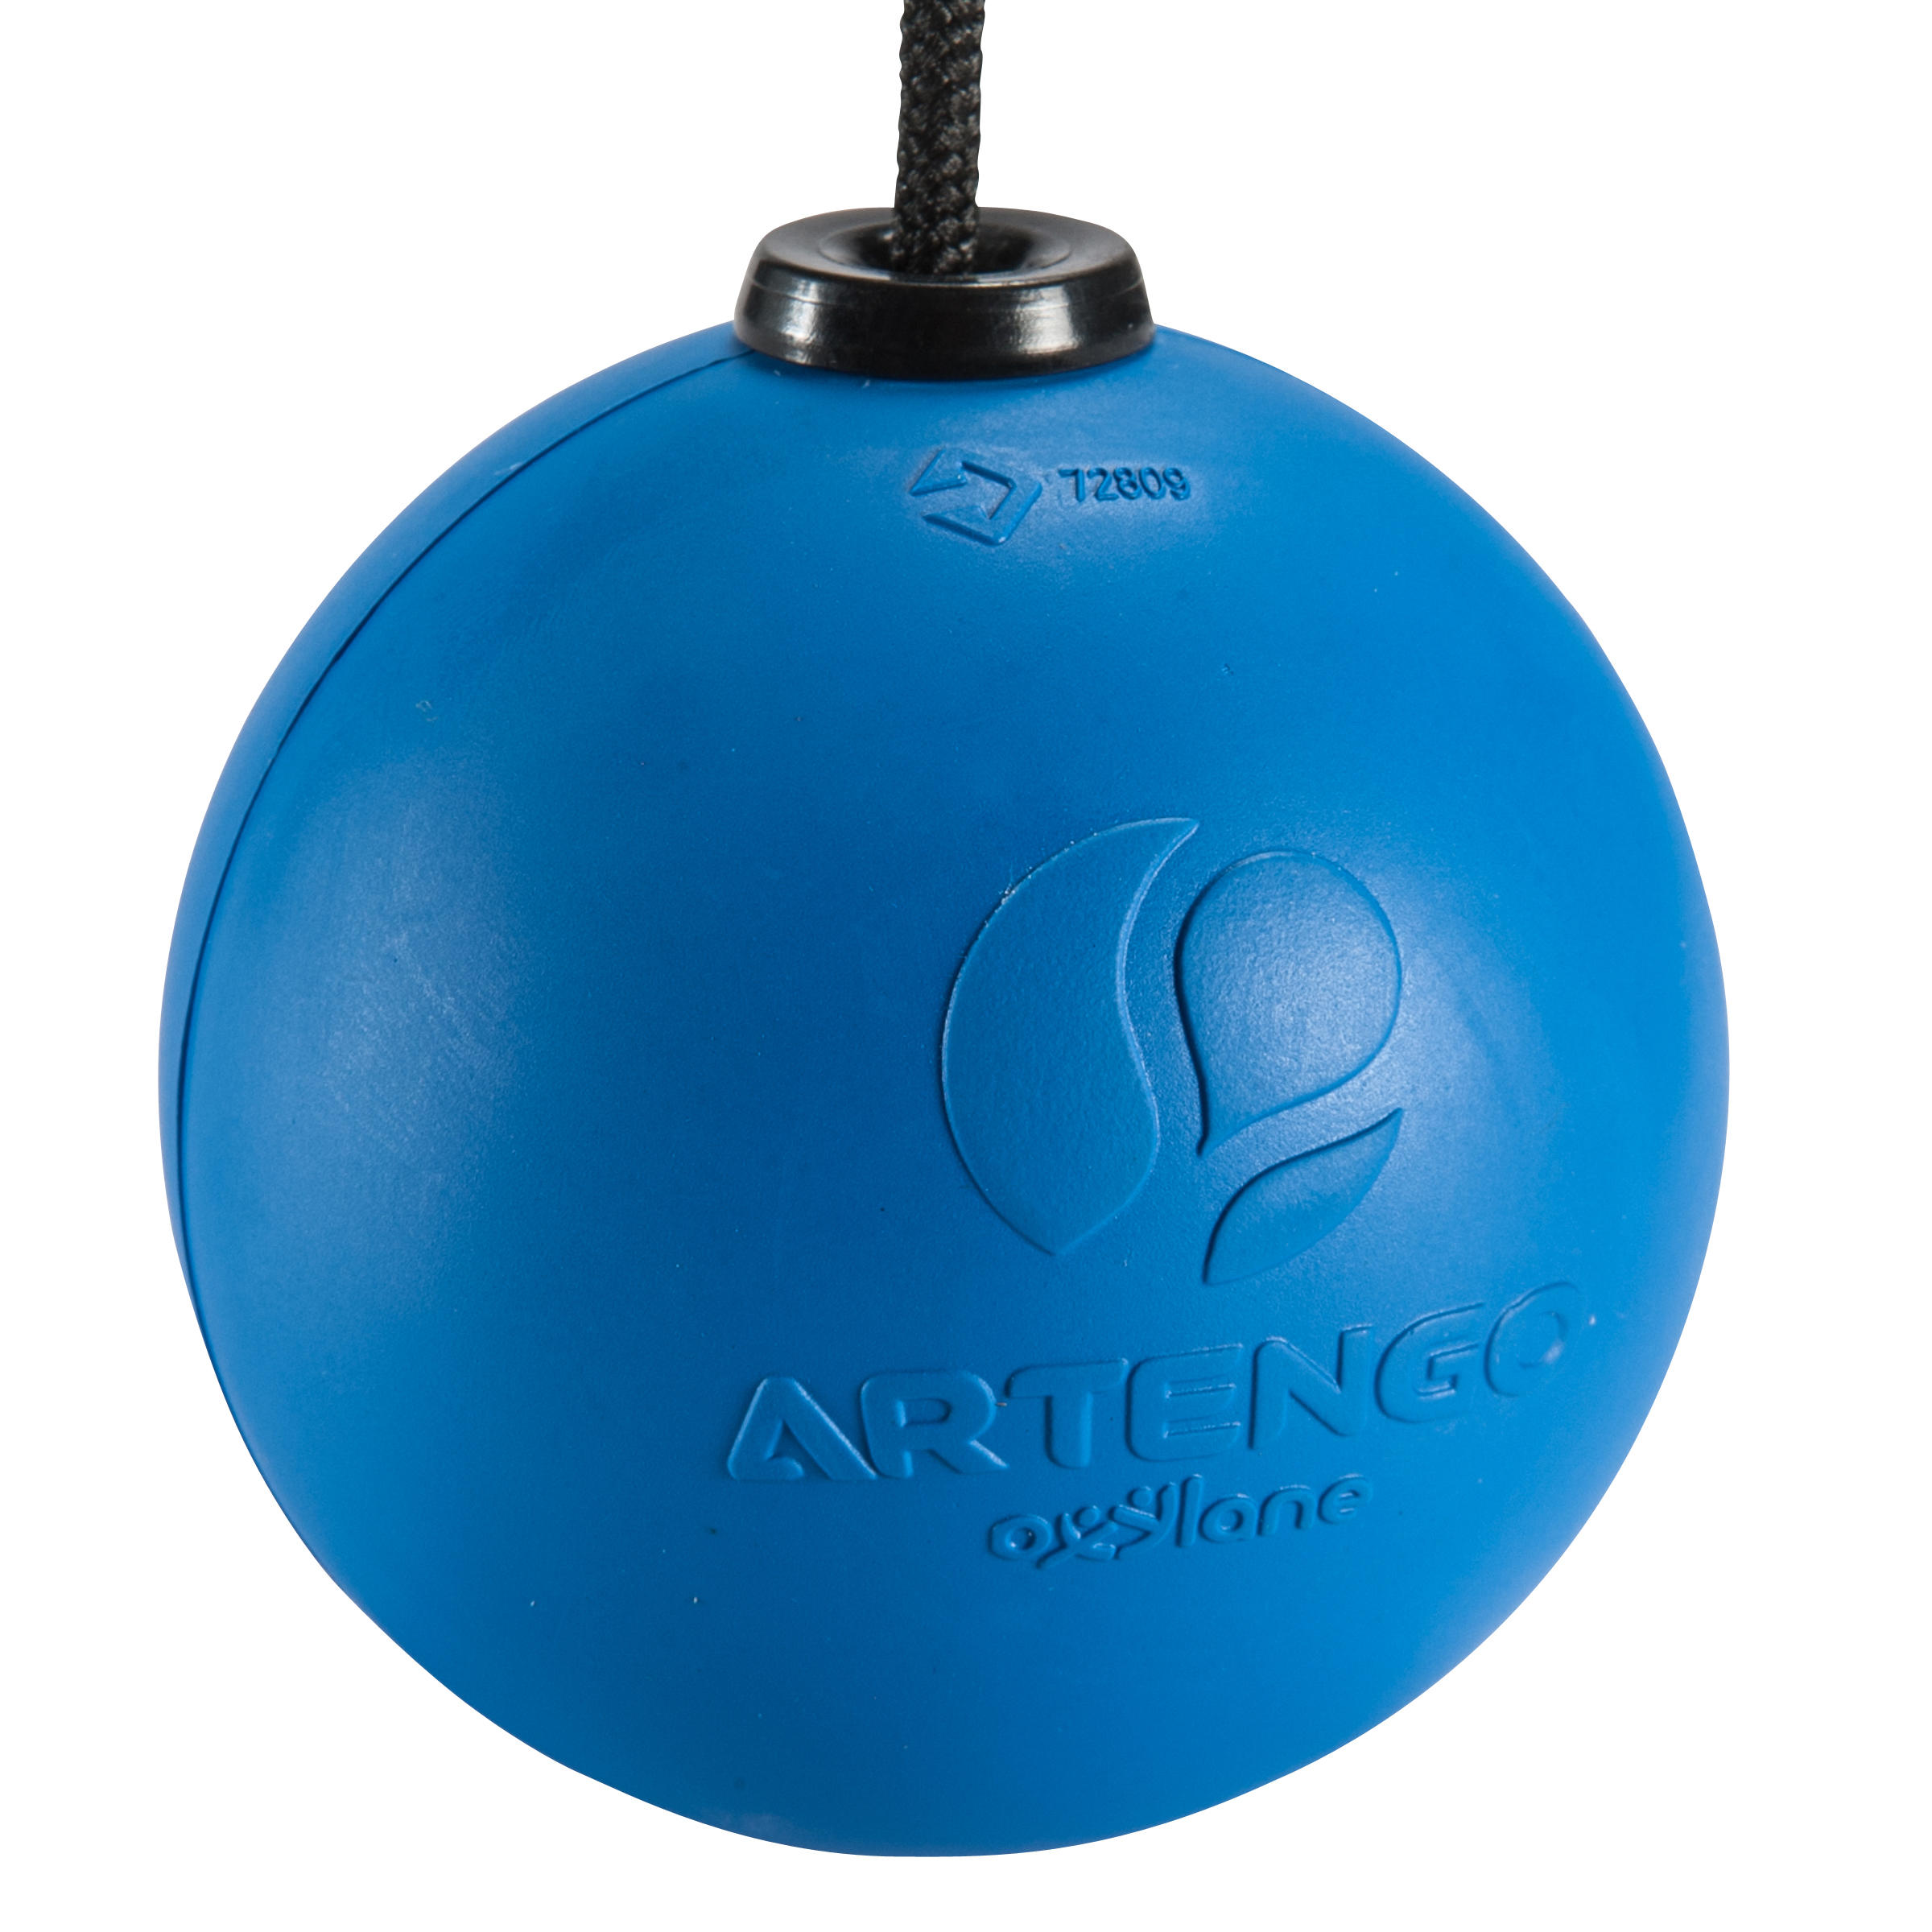 blue rubber ball